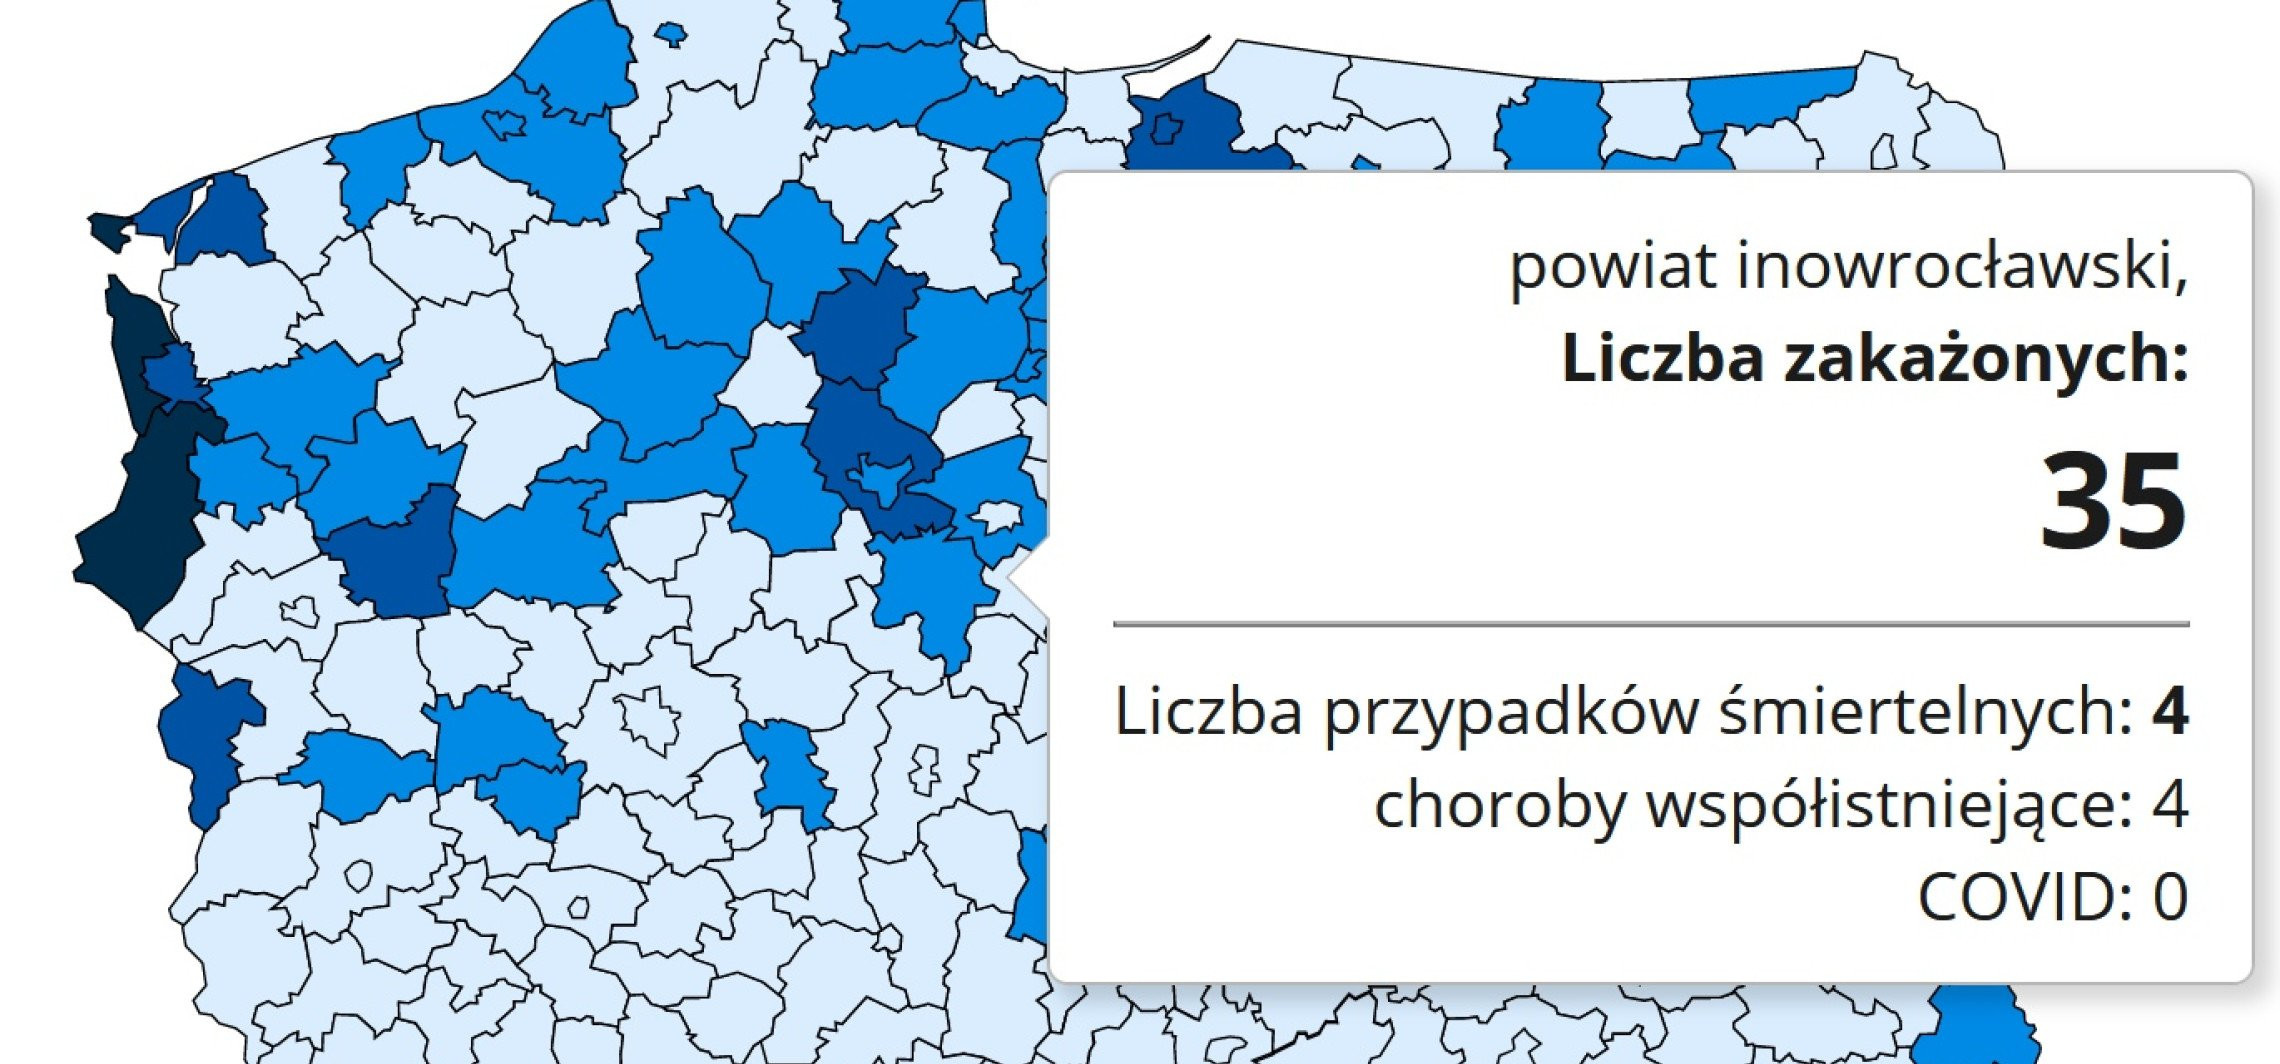 Inowrocław - W drugi dzień świąt duży spadek zakażeń